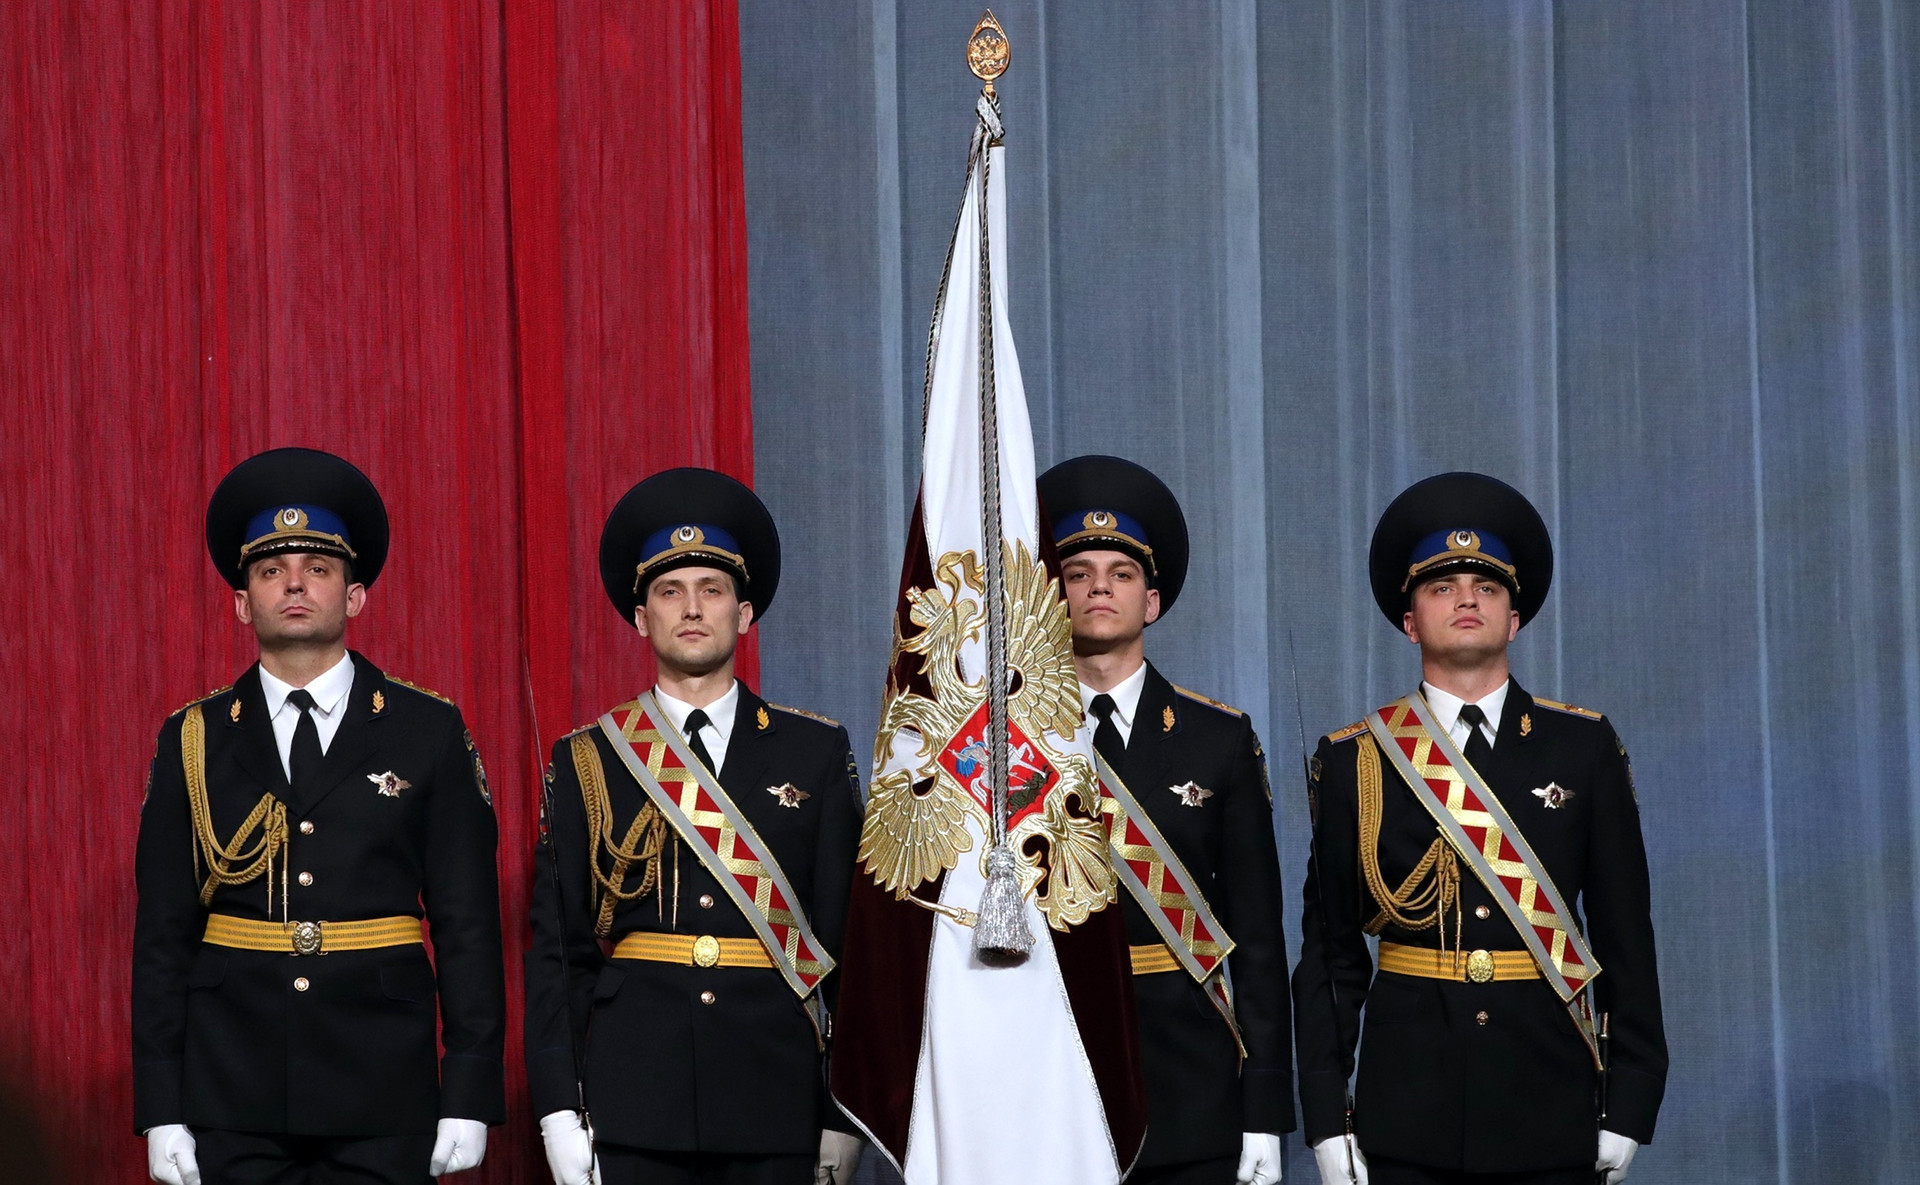 Pripadnici Rosgvardije (Ruske nacionalne garde) na prijemu u Kremlju, ožujak 2017.

